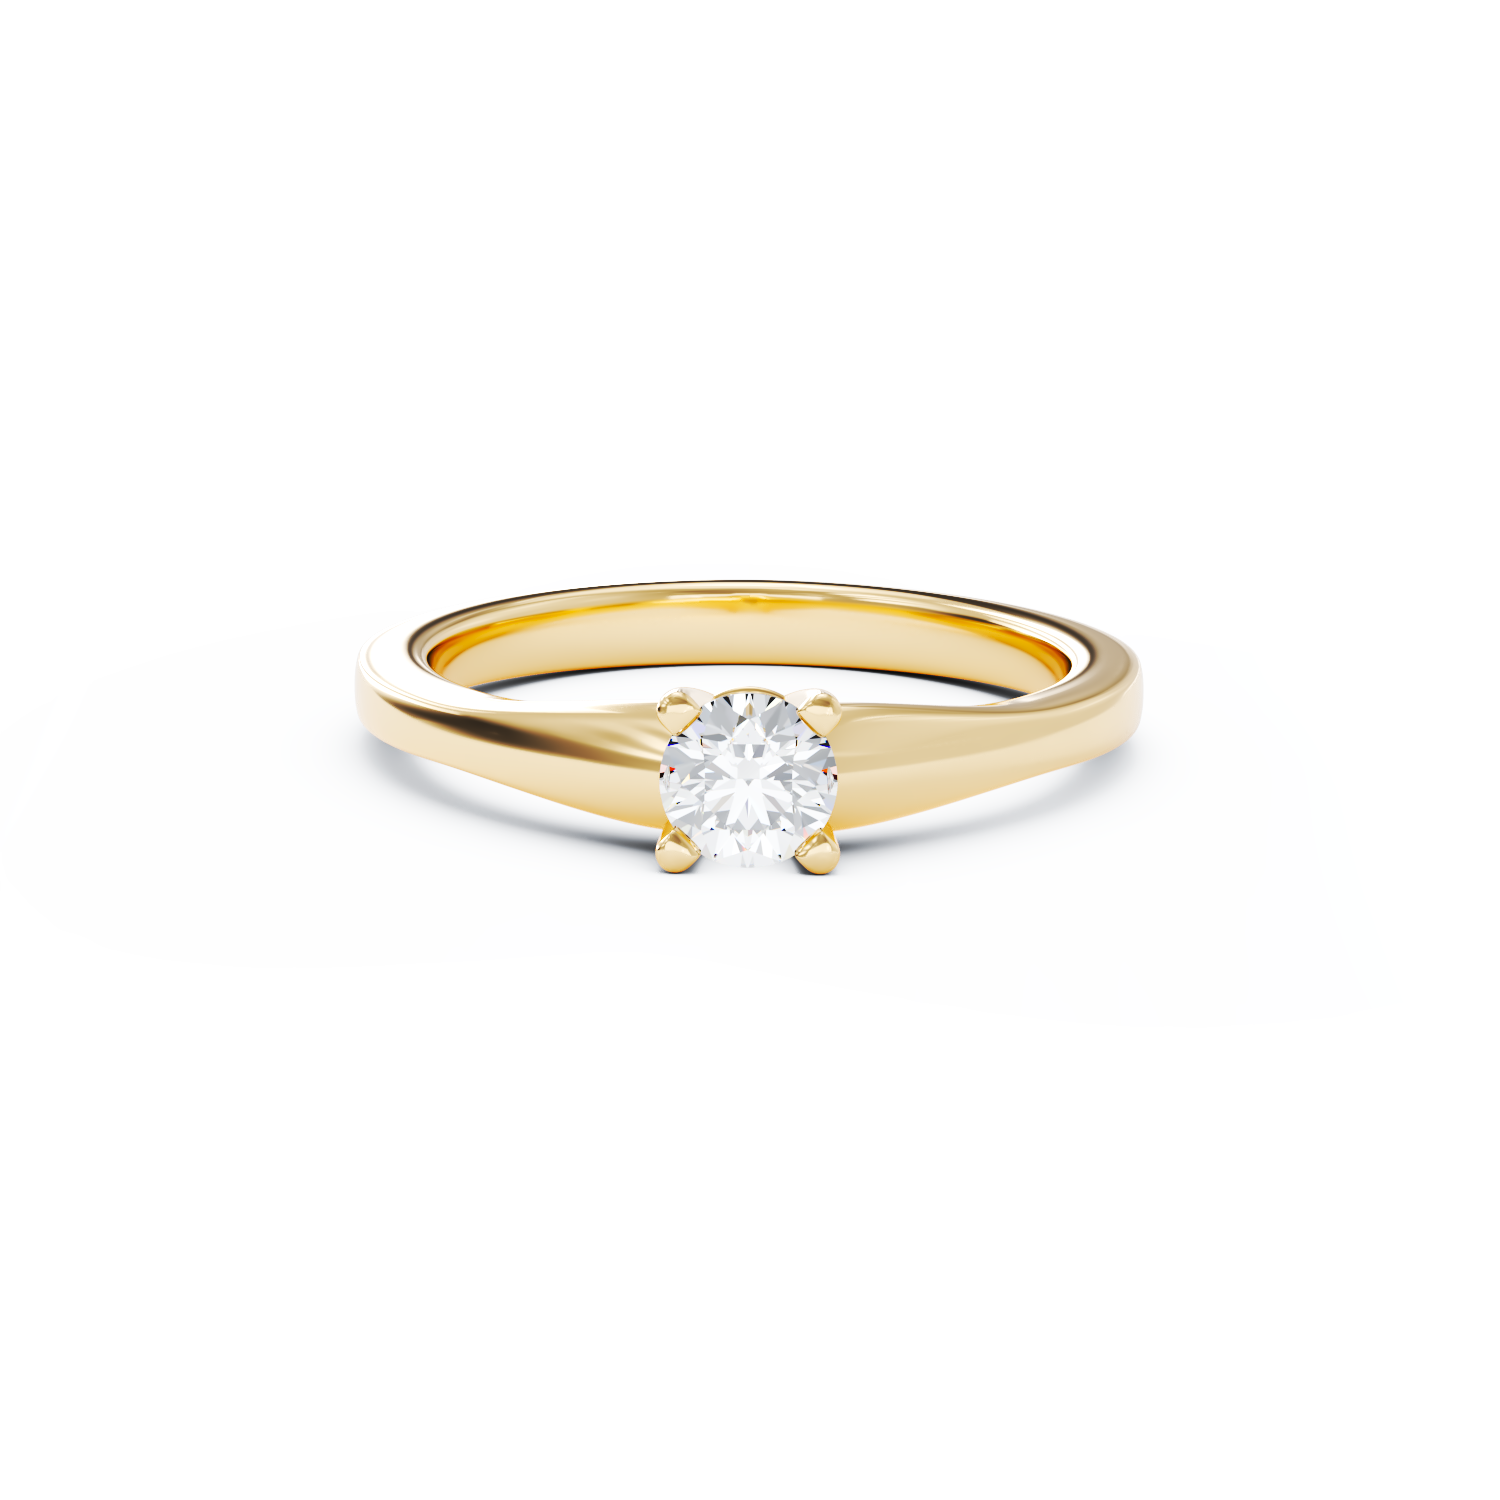 Poze Inel de logodna din aur galben de 18K cu un diamant solitaire de 0.24ct